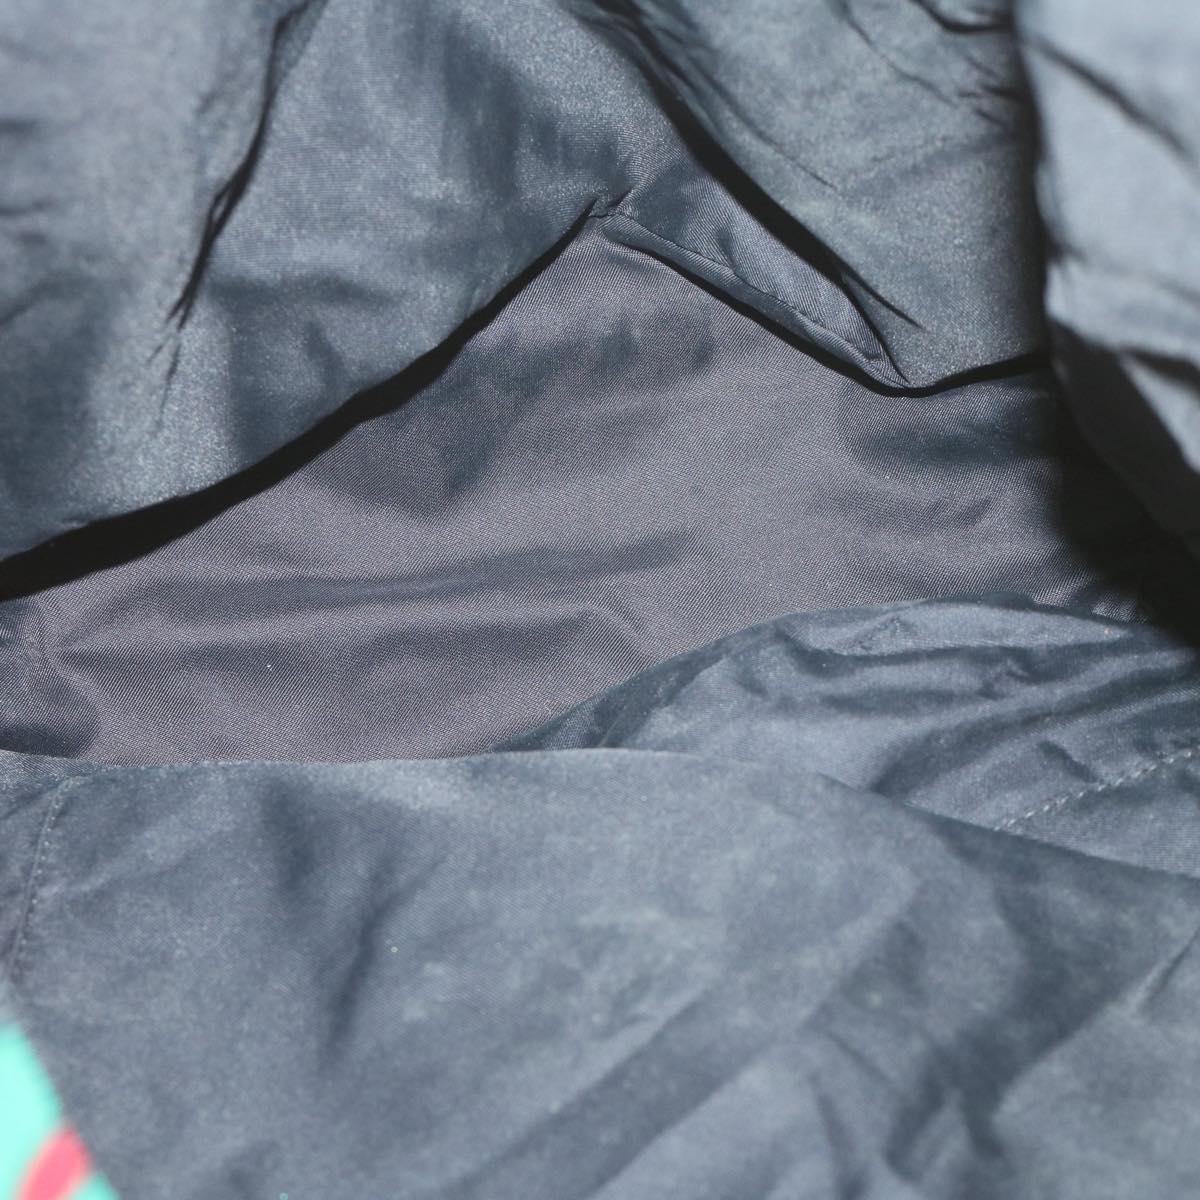 SAINT LAURENT Tote Bag Nylon Multicolor Black Auth fm3181